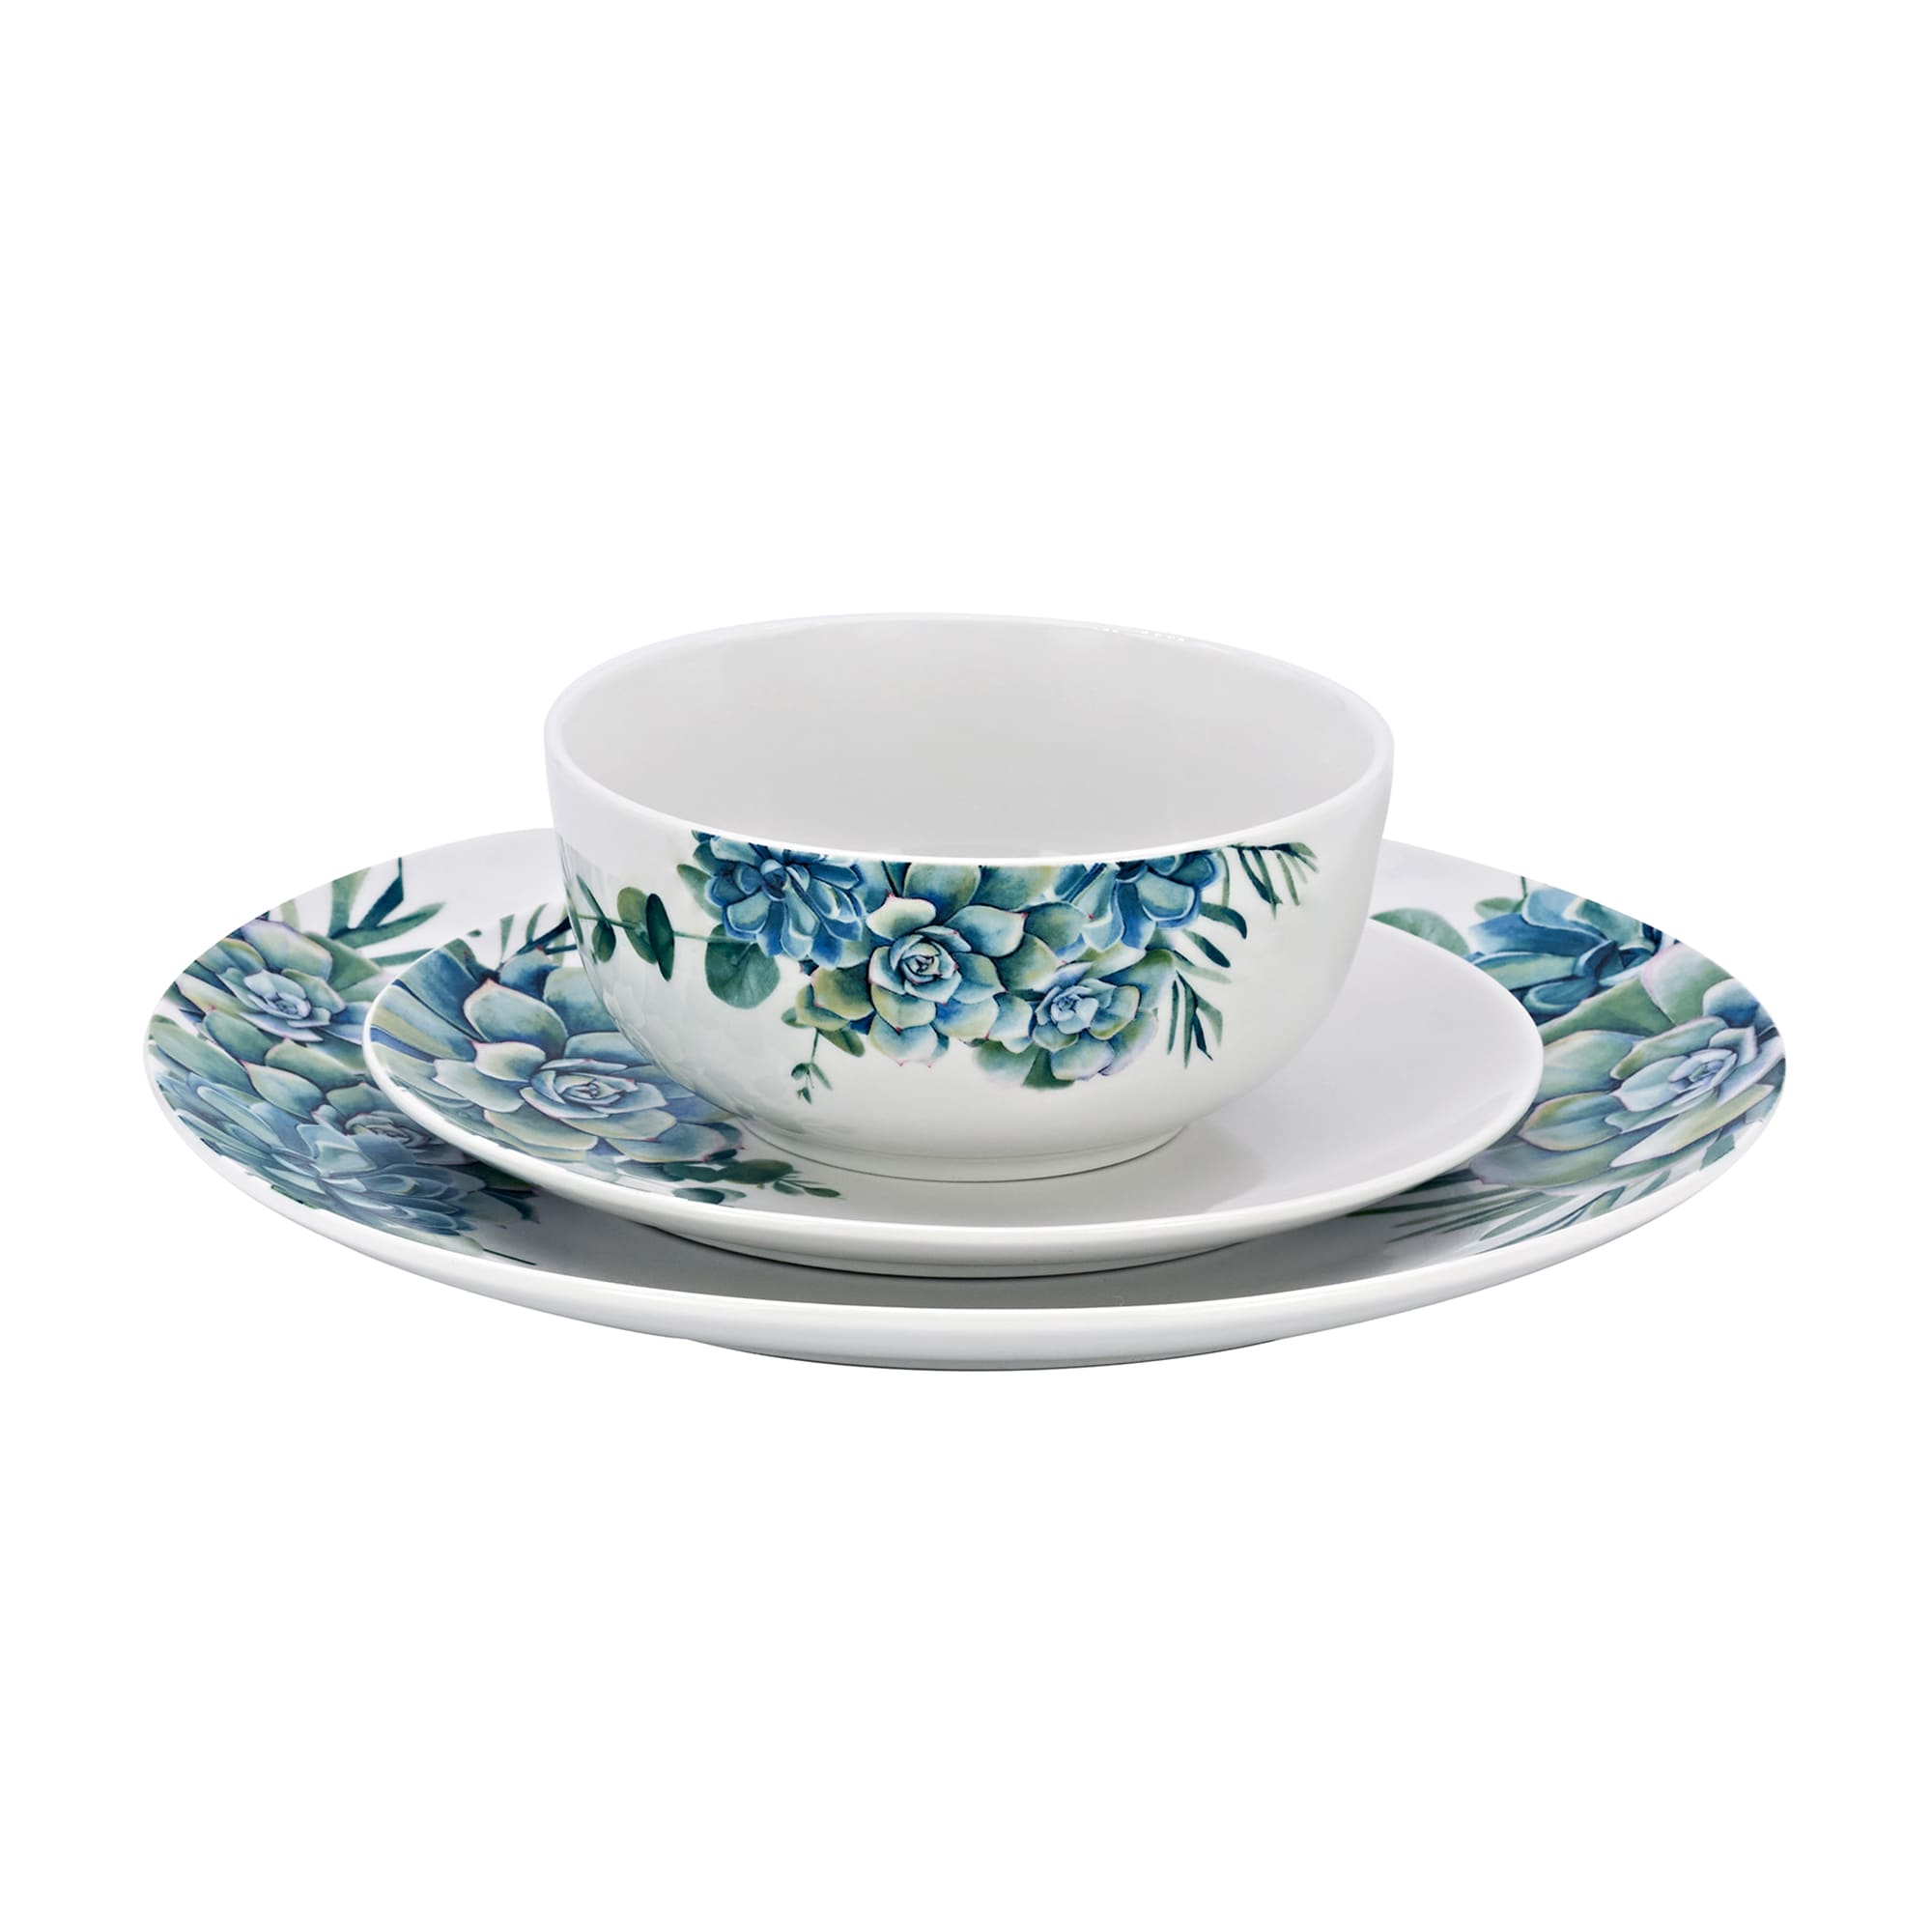 Godinger 12-pc. Service for 4 Dinnerware Ross-Simons Set Succulent | Porcelain